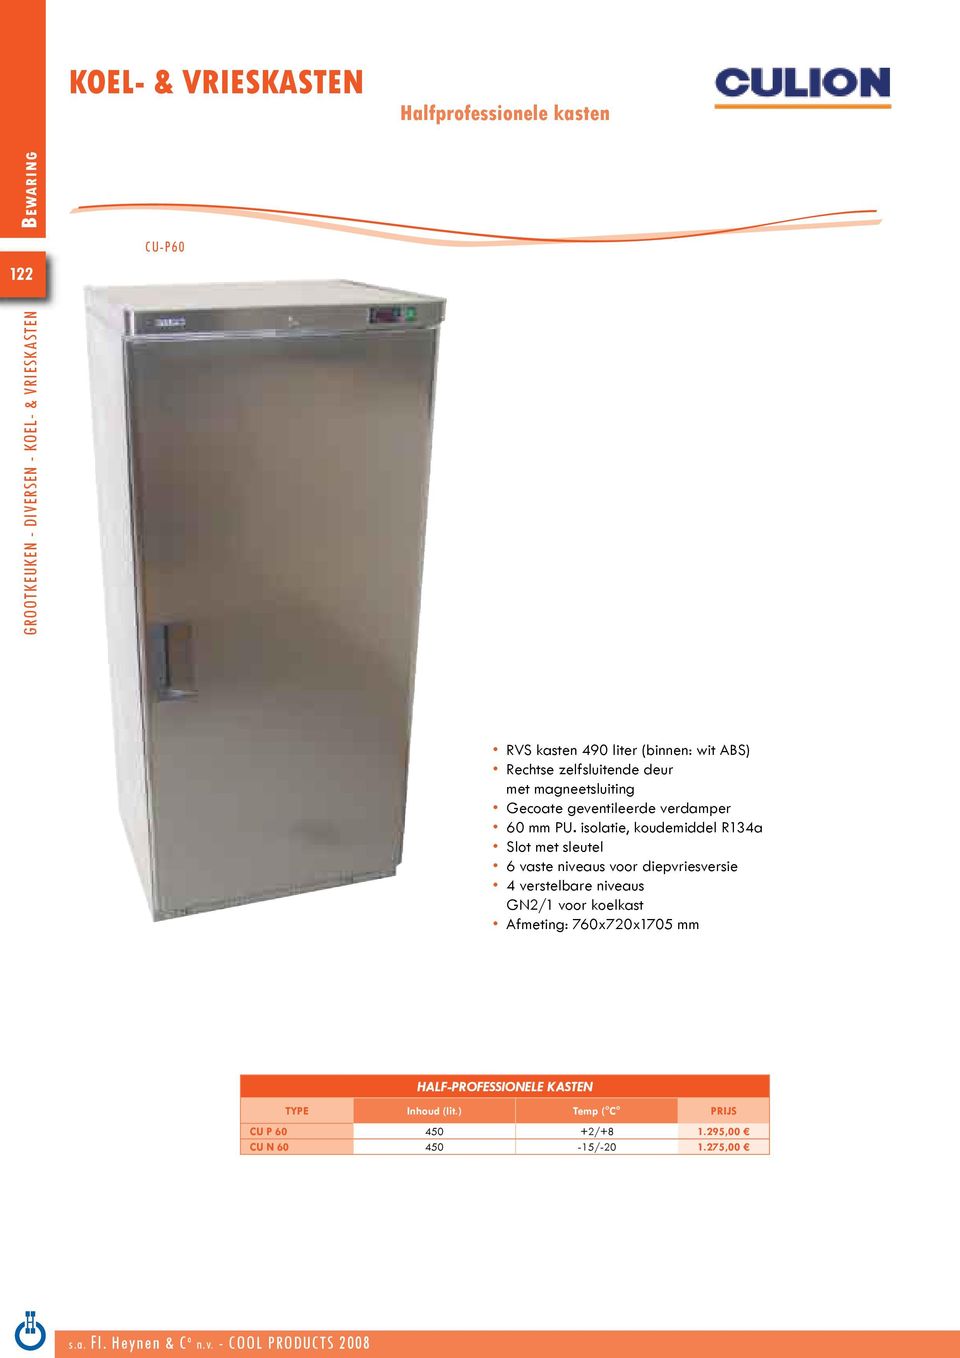 isolatie, koudemiddel R134a Slot met sleutel 6 vaste niveaus voor diepvriesversie 4 verstelbare niveaus GN2/1 voor koelkast Afmeting: